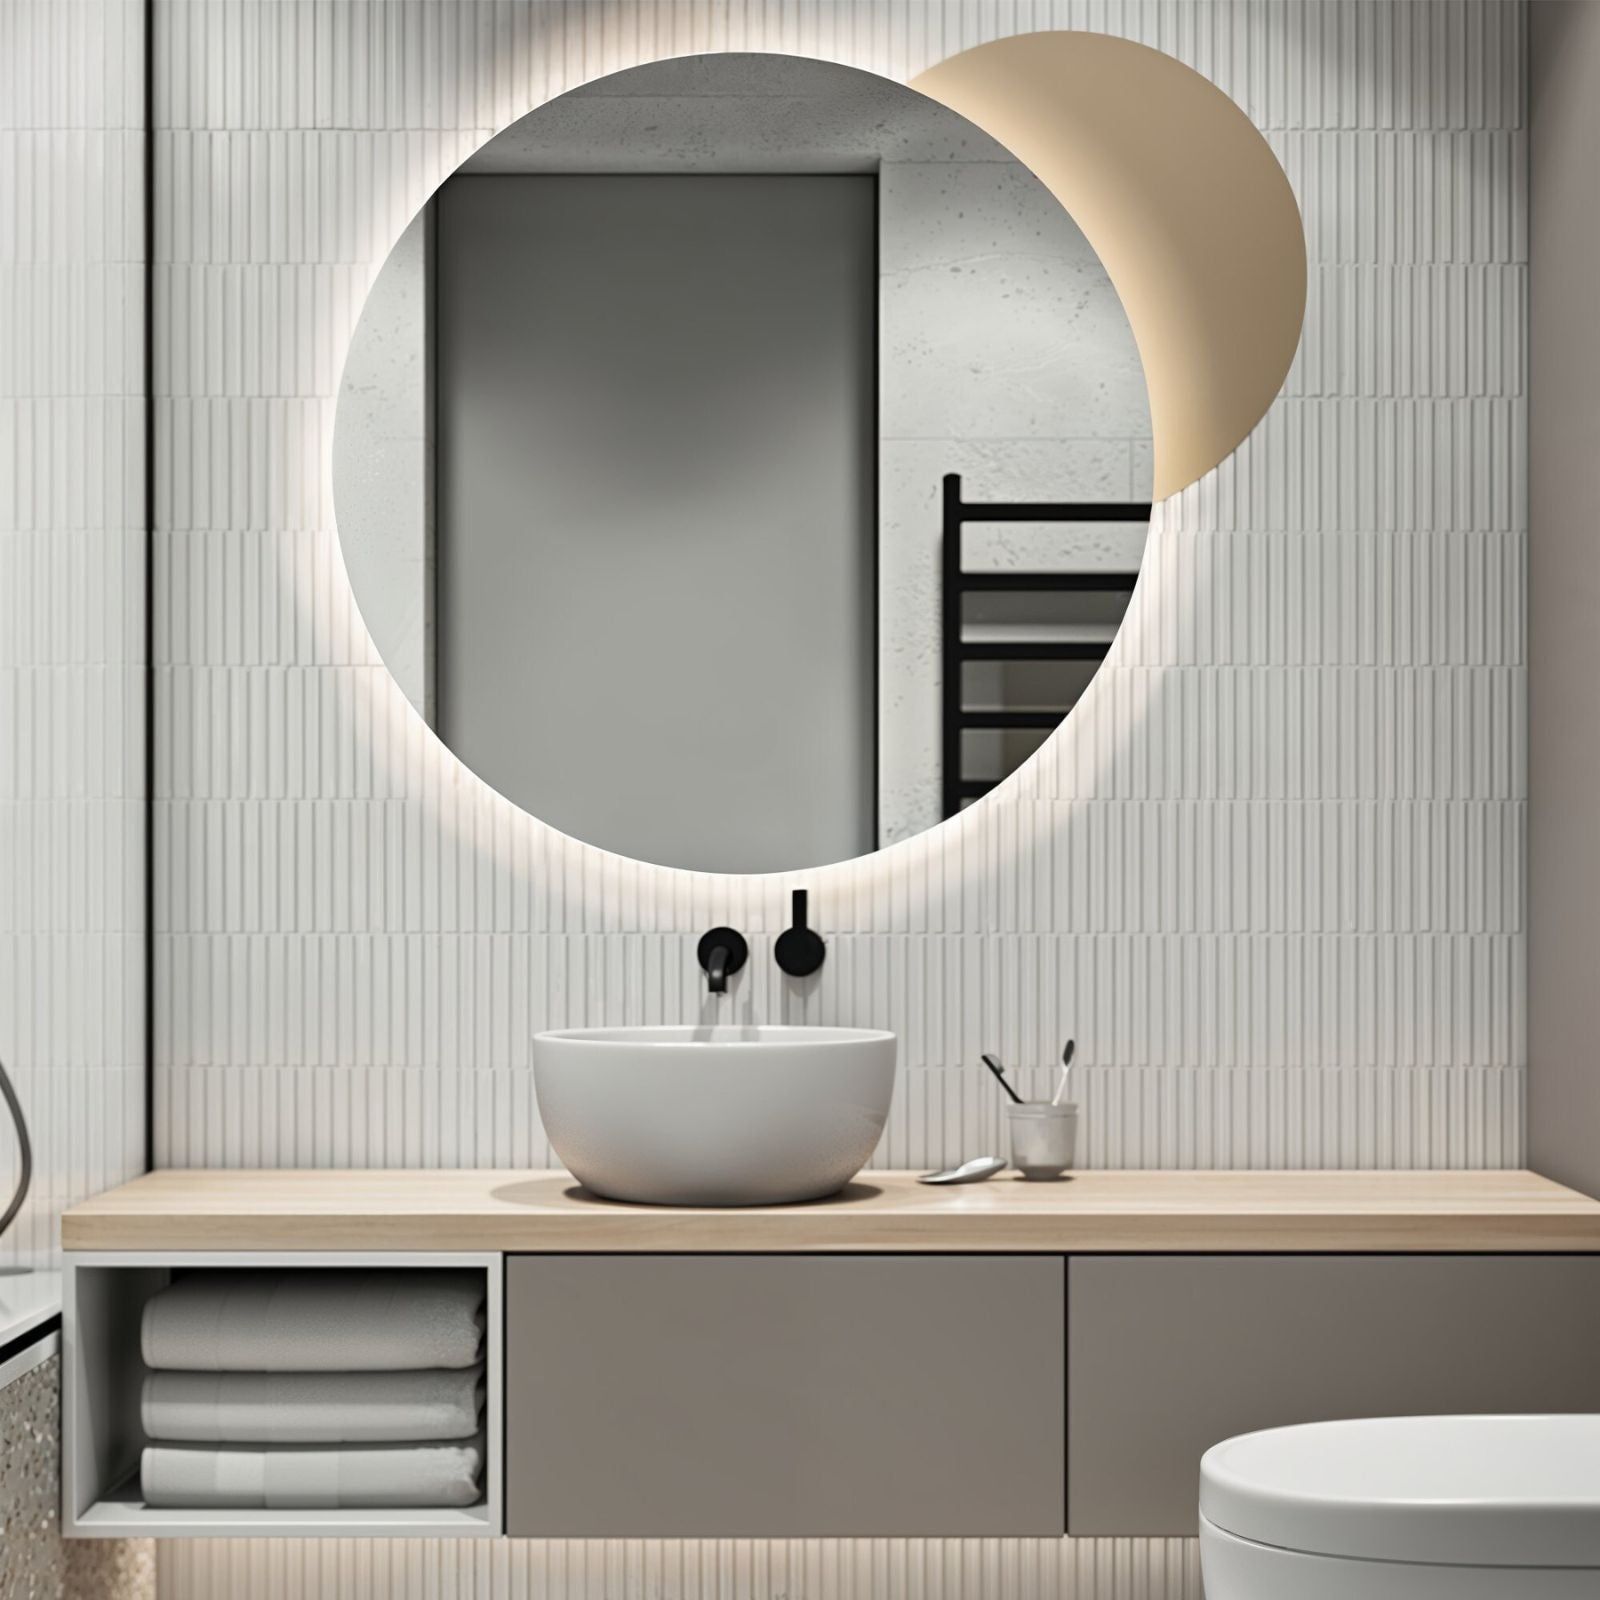 LED Spiegel Ø 60/80 cm mit Spiegelheizung Warm-/Kaltlichteinstellung Badspiegel